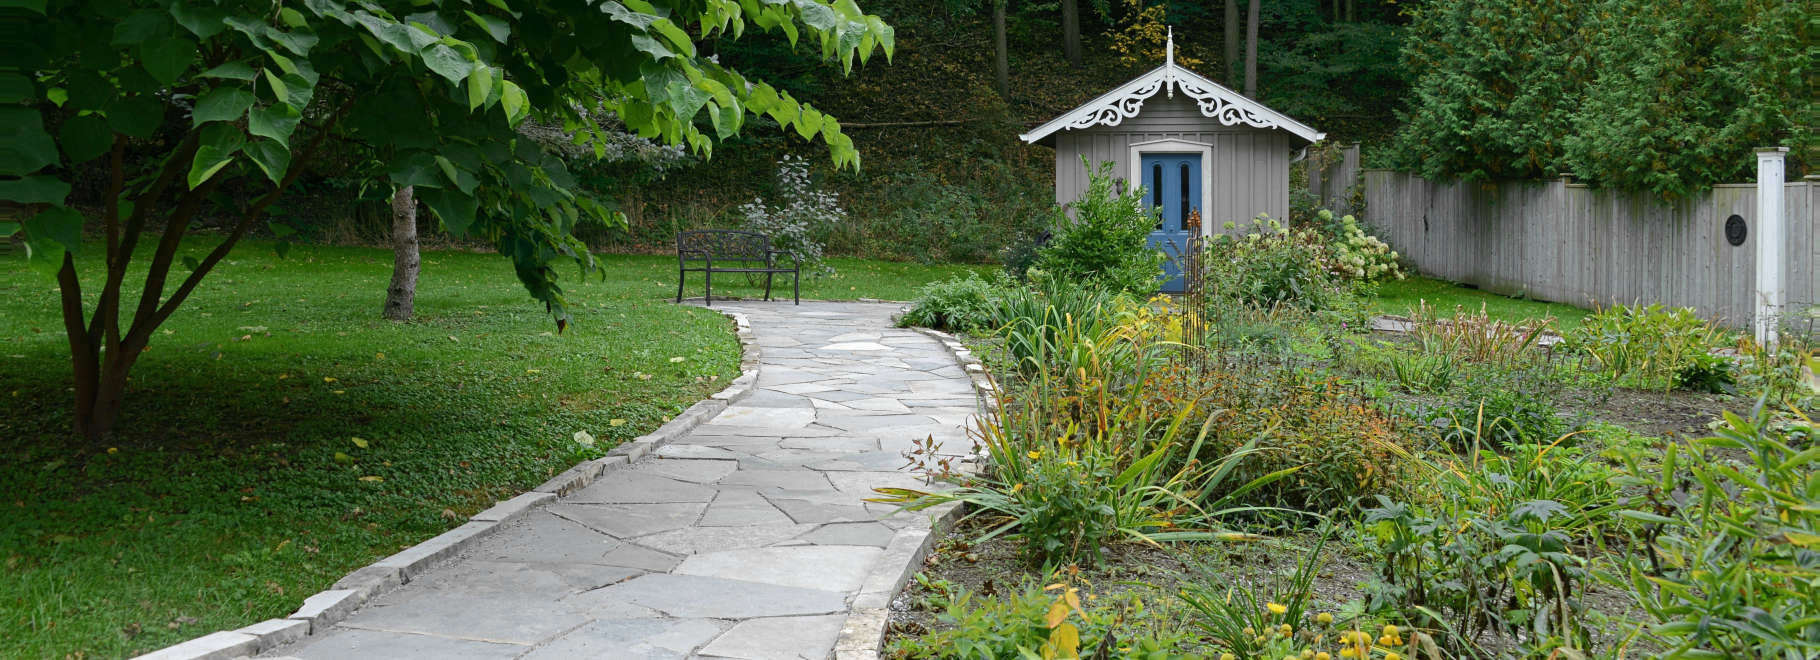 Hand-hewn stone garden path.